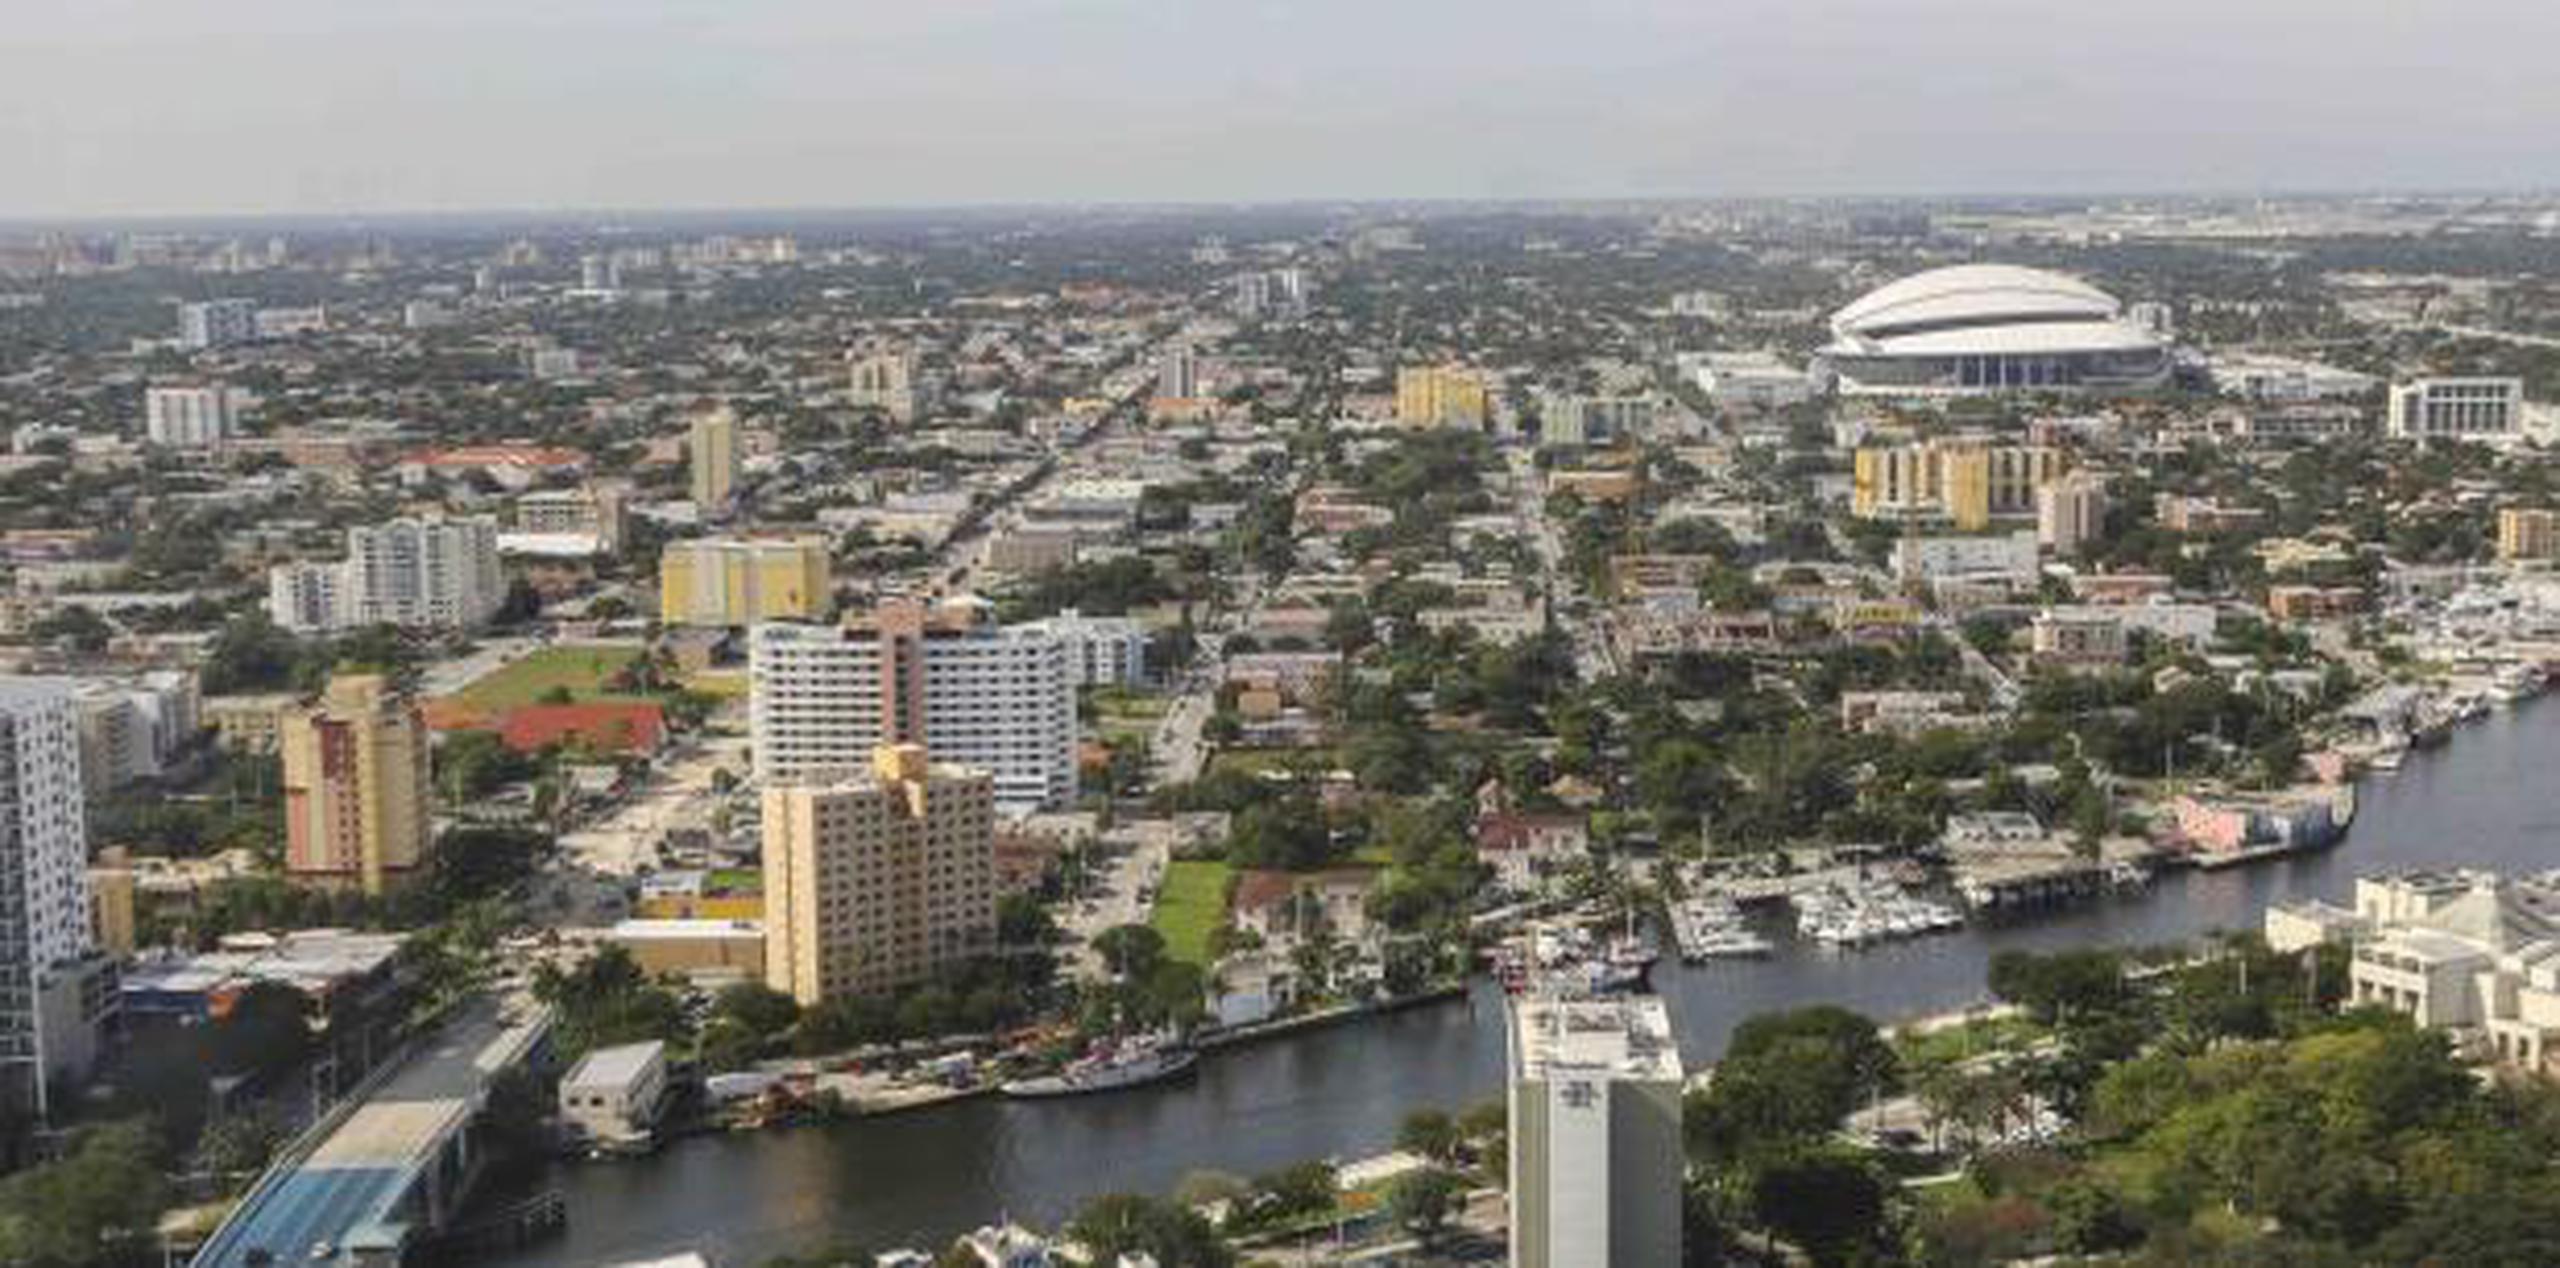 Se puede decir que el área metropolitana de Miami es una "historia de dos ciudades", ya que atrae a las personas más ricas del mundo y, al mismo tiempo, ofrece una economía basada en el sector de servicios y el turismo. (EFE)